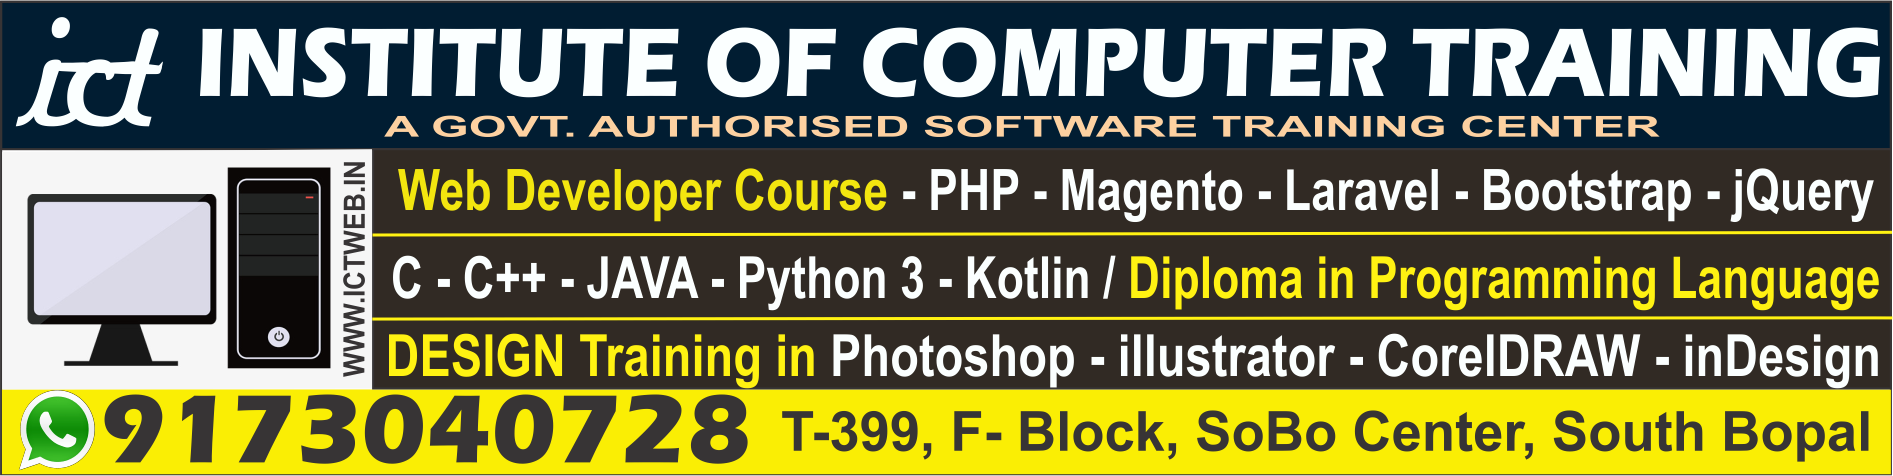 Institute of Computer Training|Universities|Education